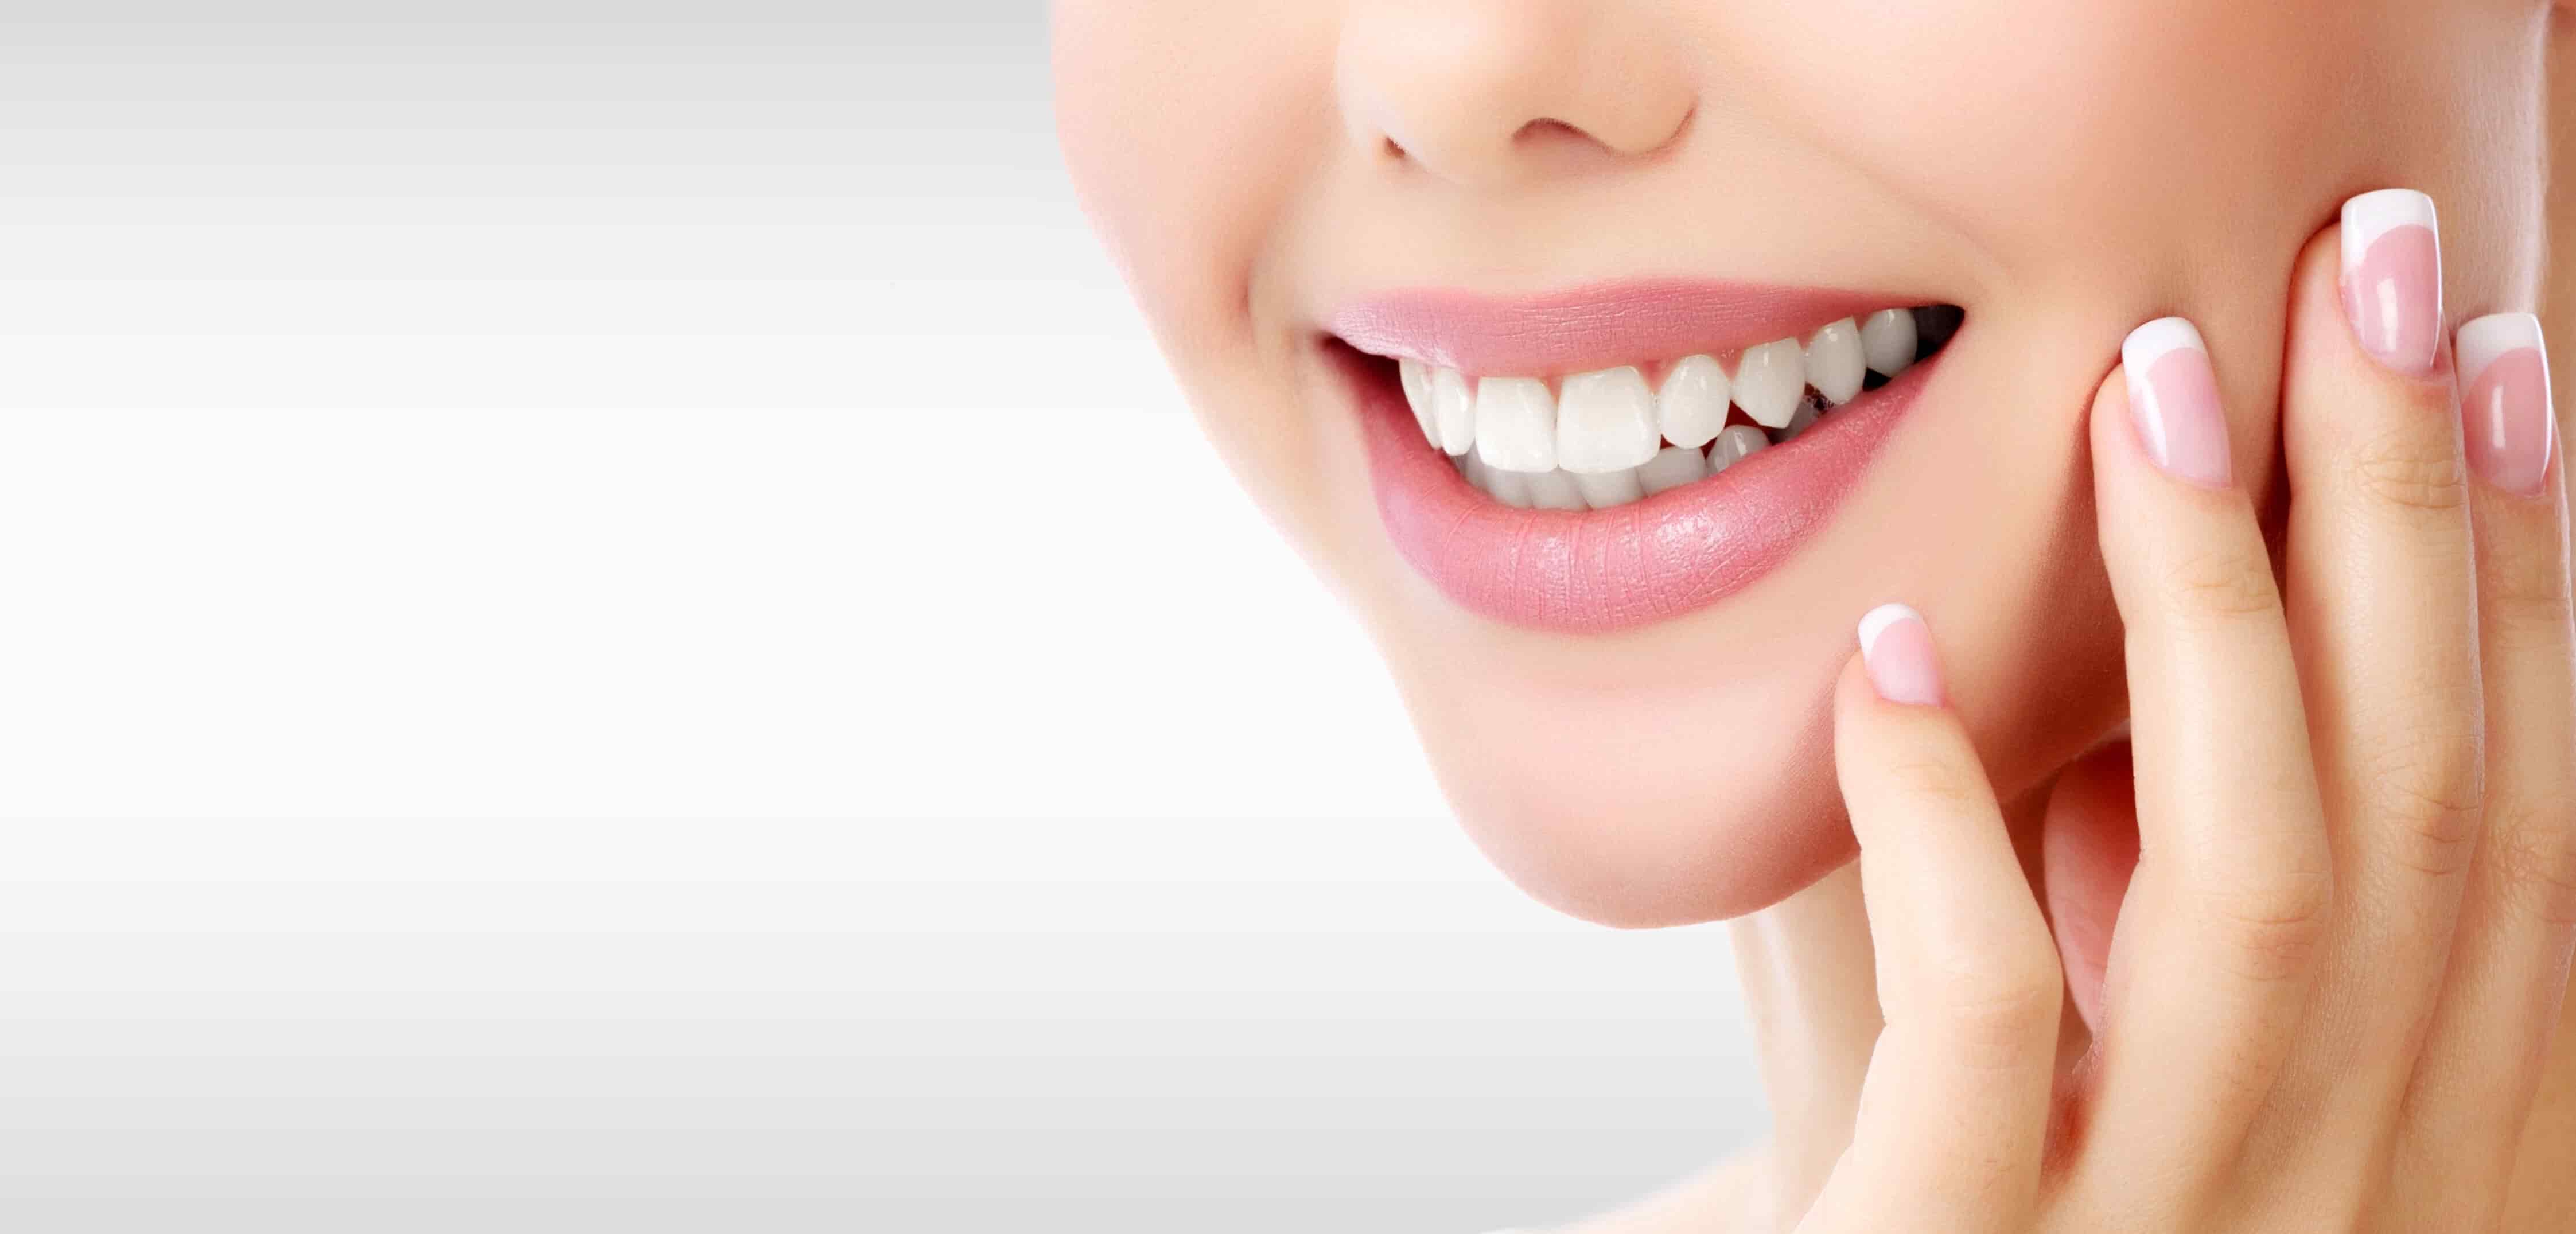 Sbiancamento Dentale si tratta di una procedura che permette di migliorare il colore dei denti, rendendoli sicuramente più bianchi. Con il turismo dentale, puoi ottenere un sorriso luminoso a basso prezzo nella clinica dentale Grand Turismo Dentale in Moldavia